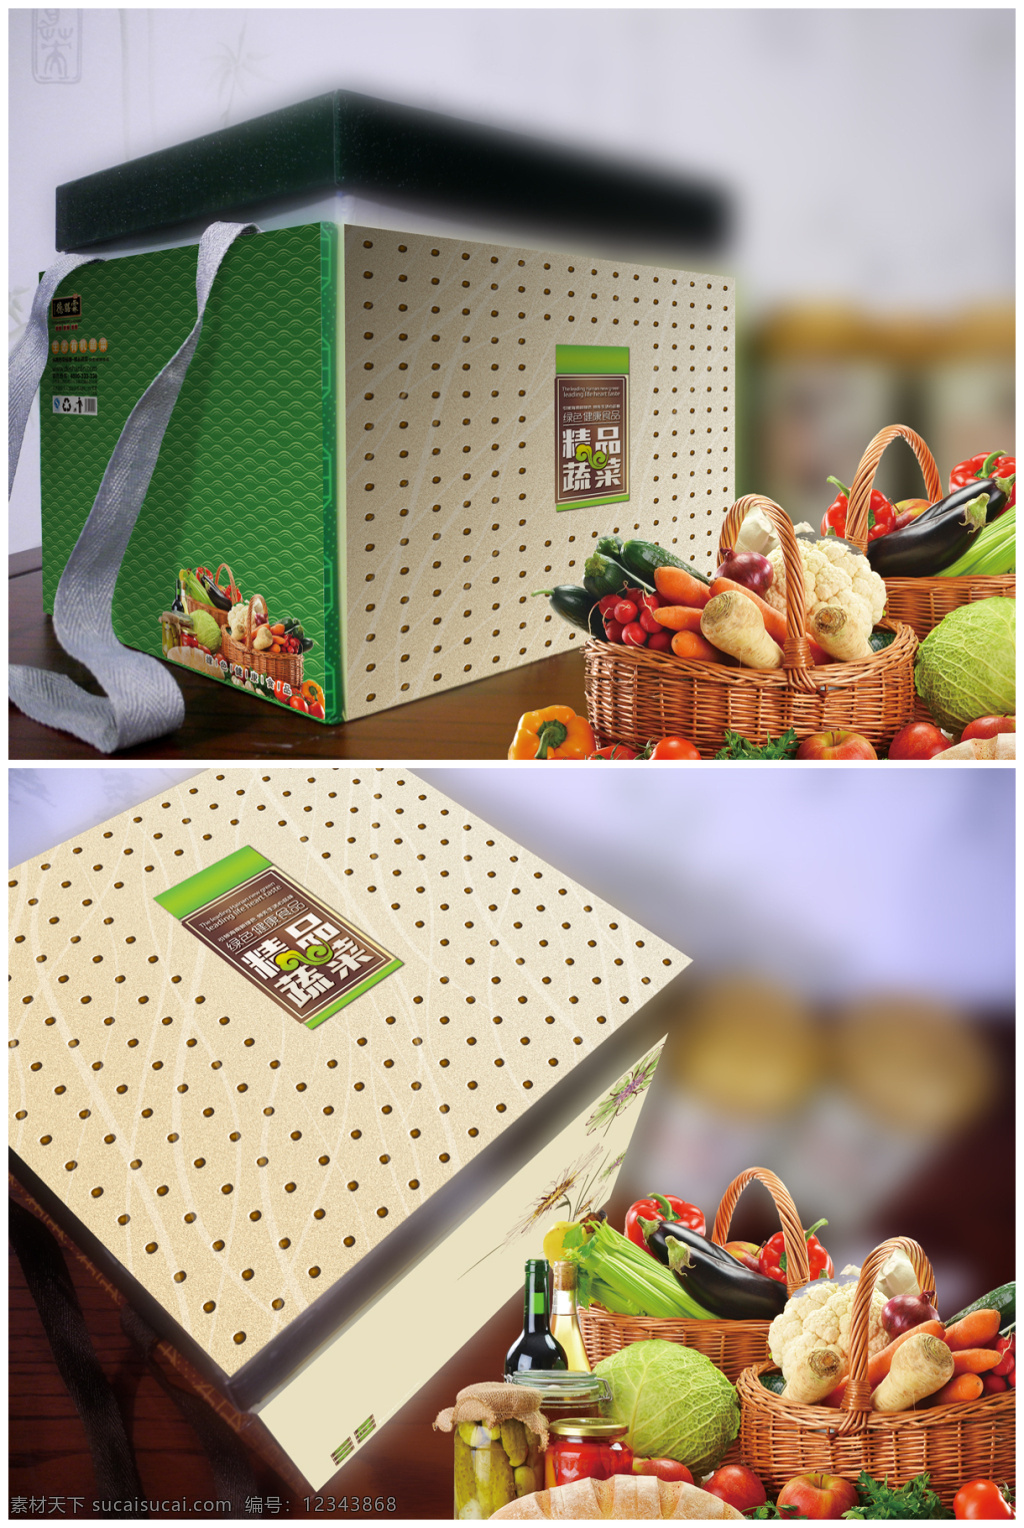 精品蔬菜包装 果蔬包装 水果包装 包装设计 包装盒 手提盒 psd素材 礼品盒 蔬菜包装 底纹花纹 包装效果图 白色